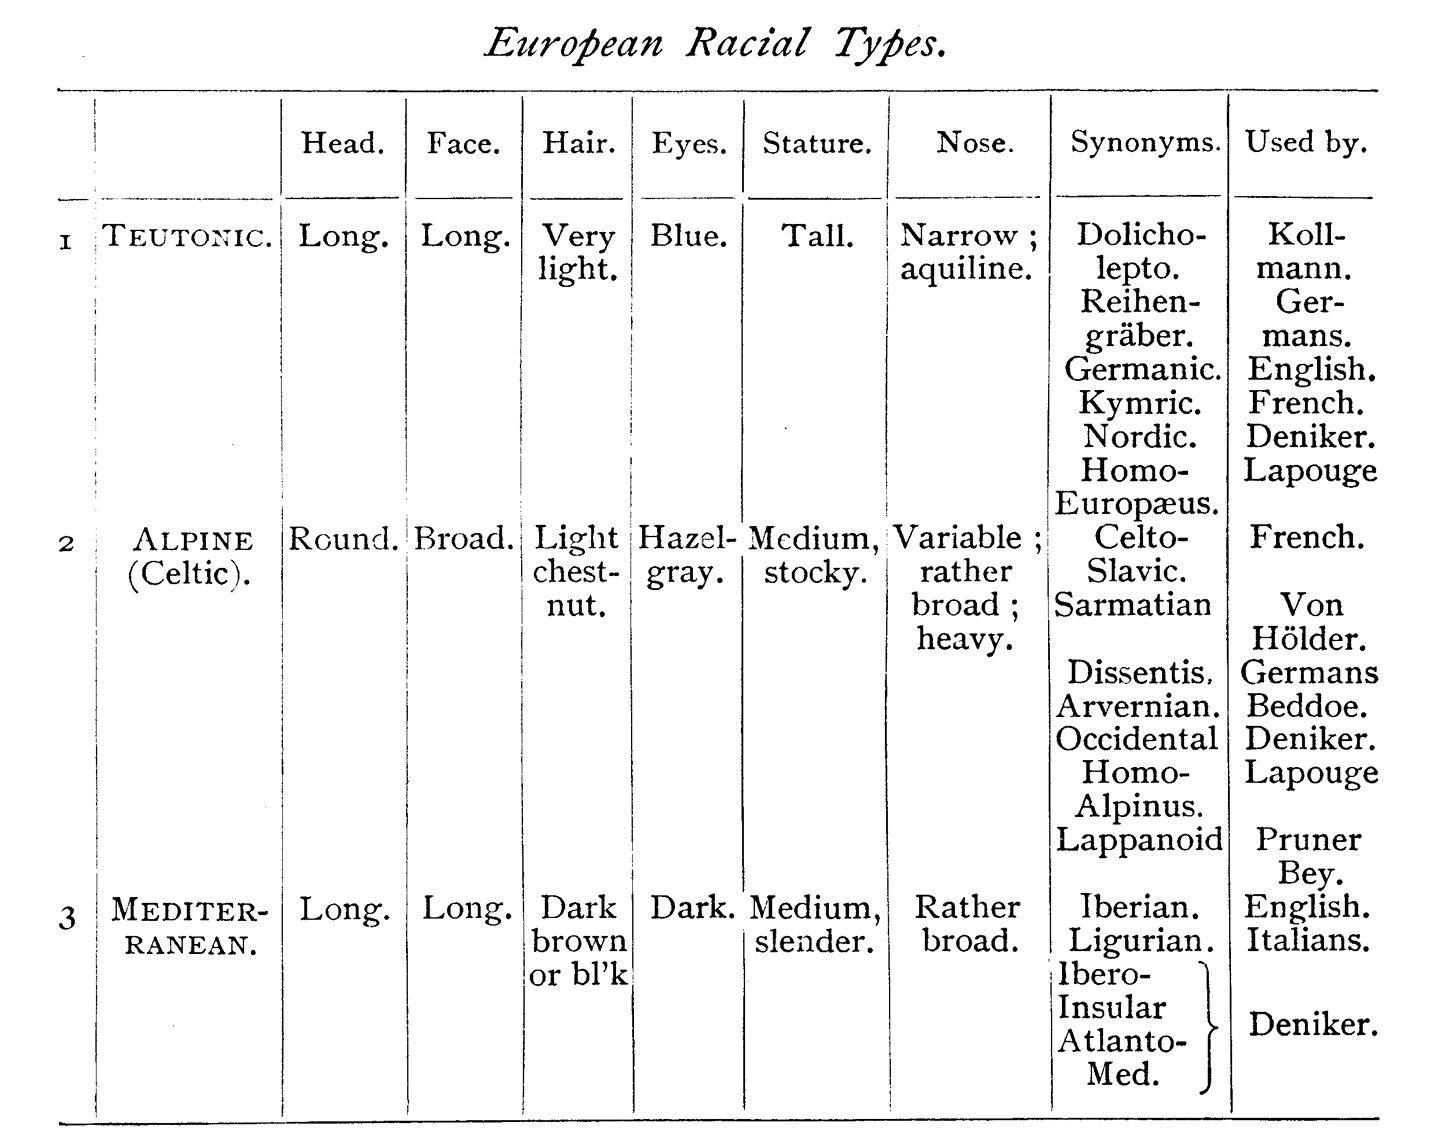 William Z. Ripley’s racial classification scheme